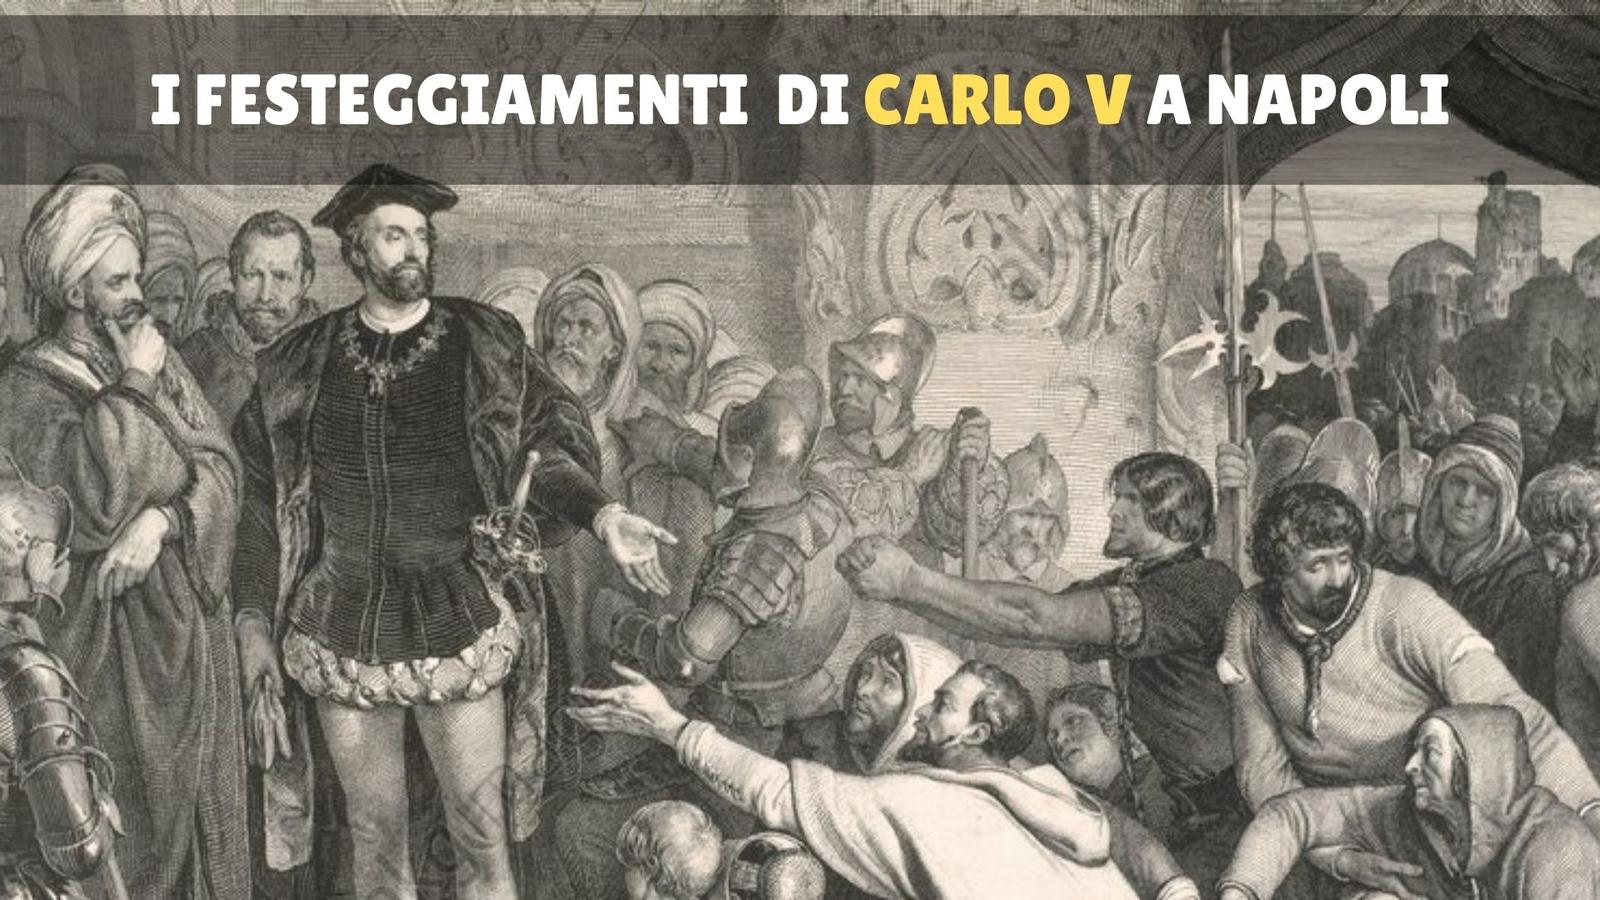 Carlo V a Napoli: gli incredibili festeggiamenti dell'Imperatore nel 1535